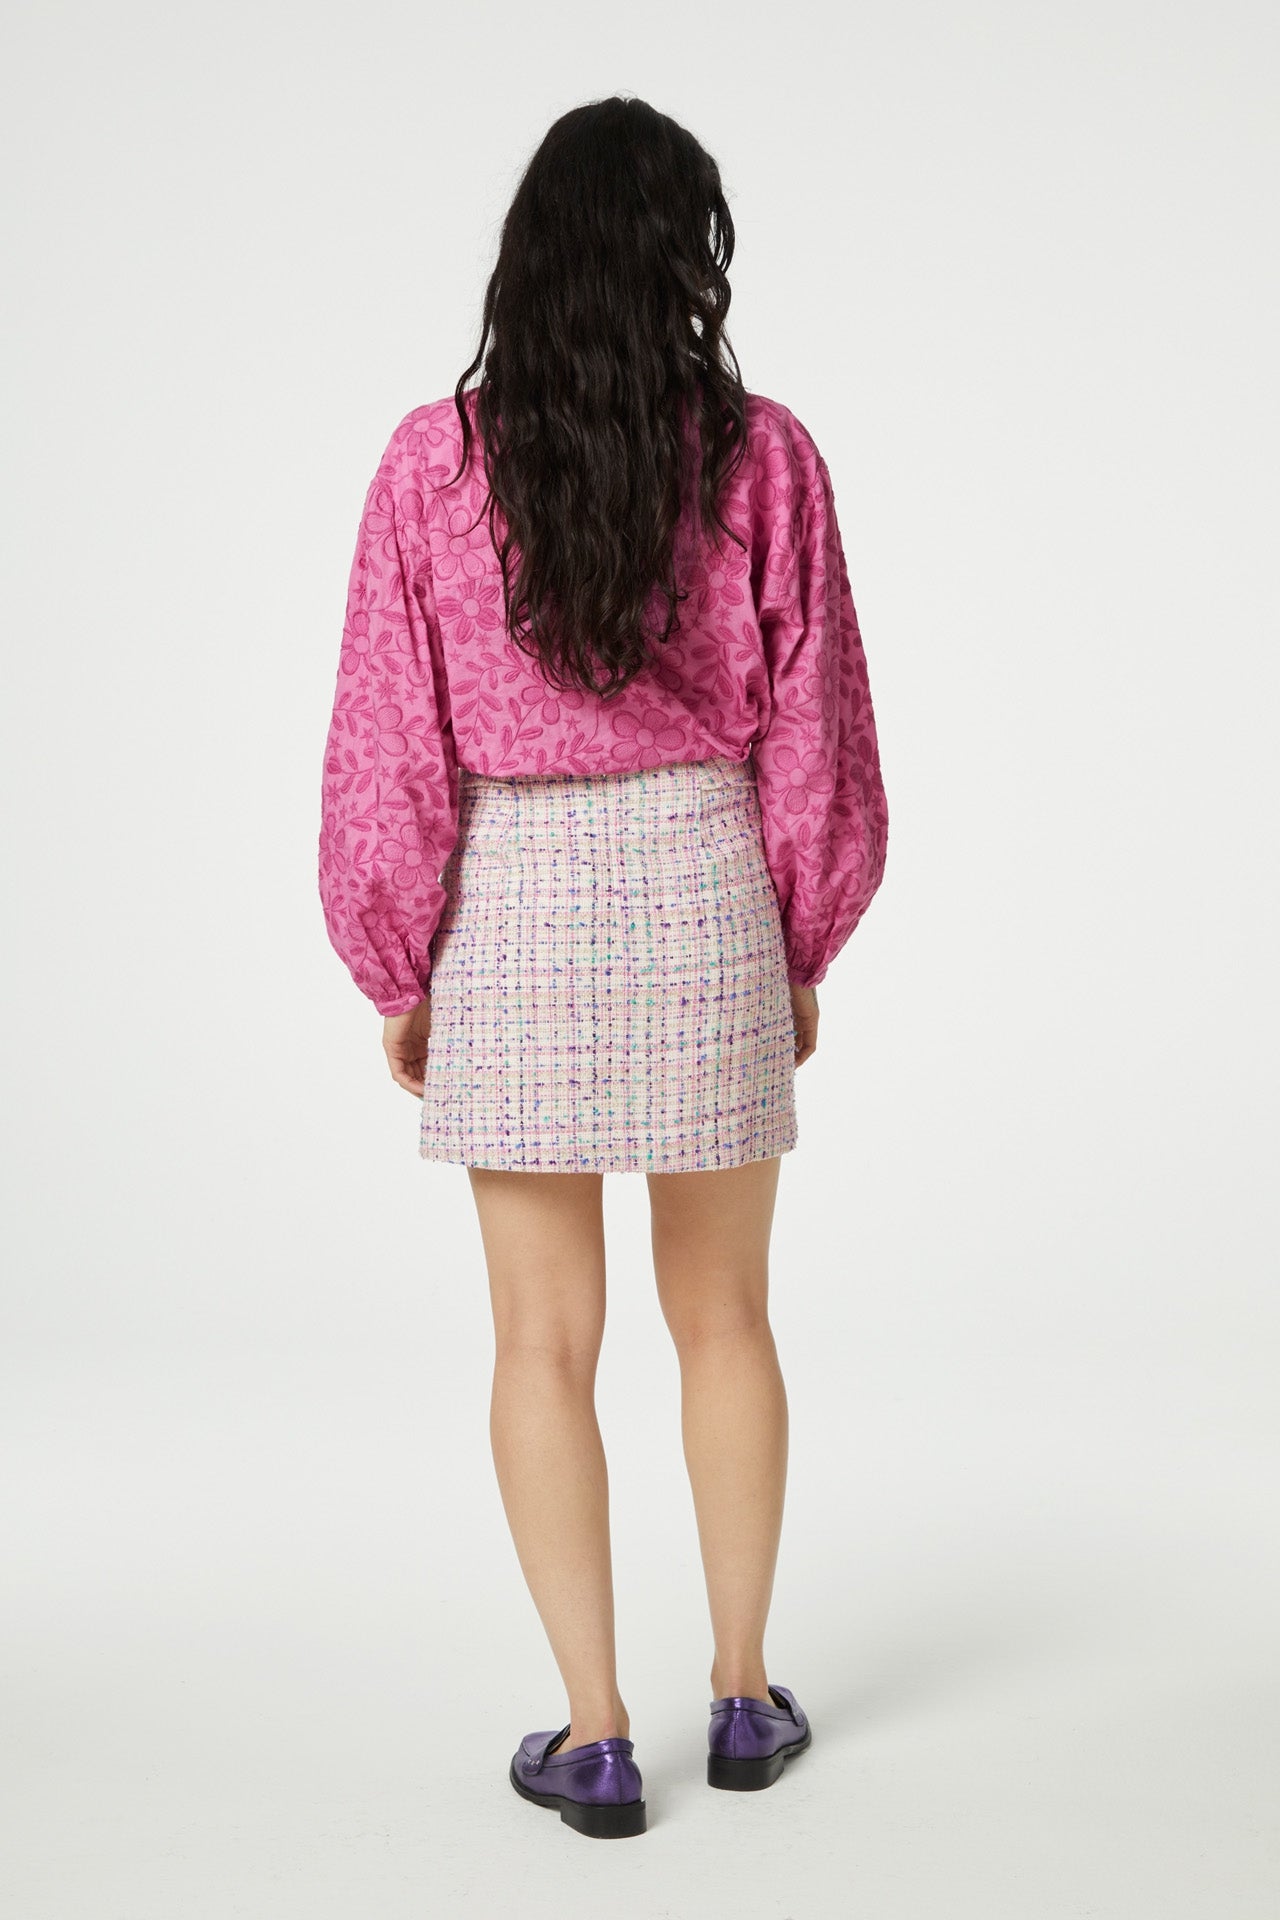 Dora Skirt | Bubble Gum Pink